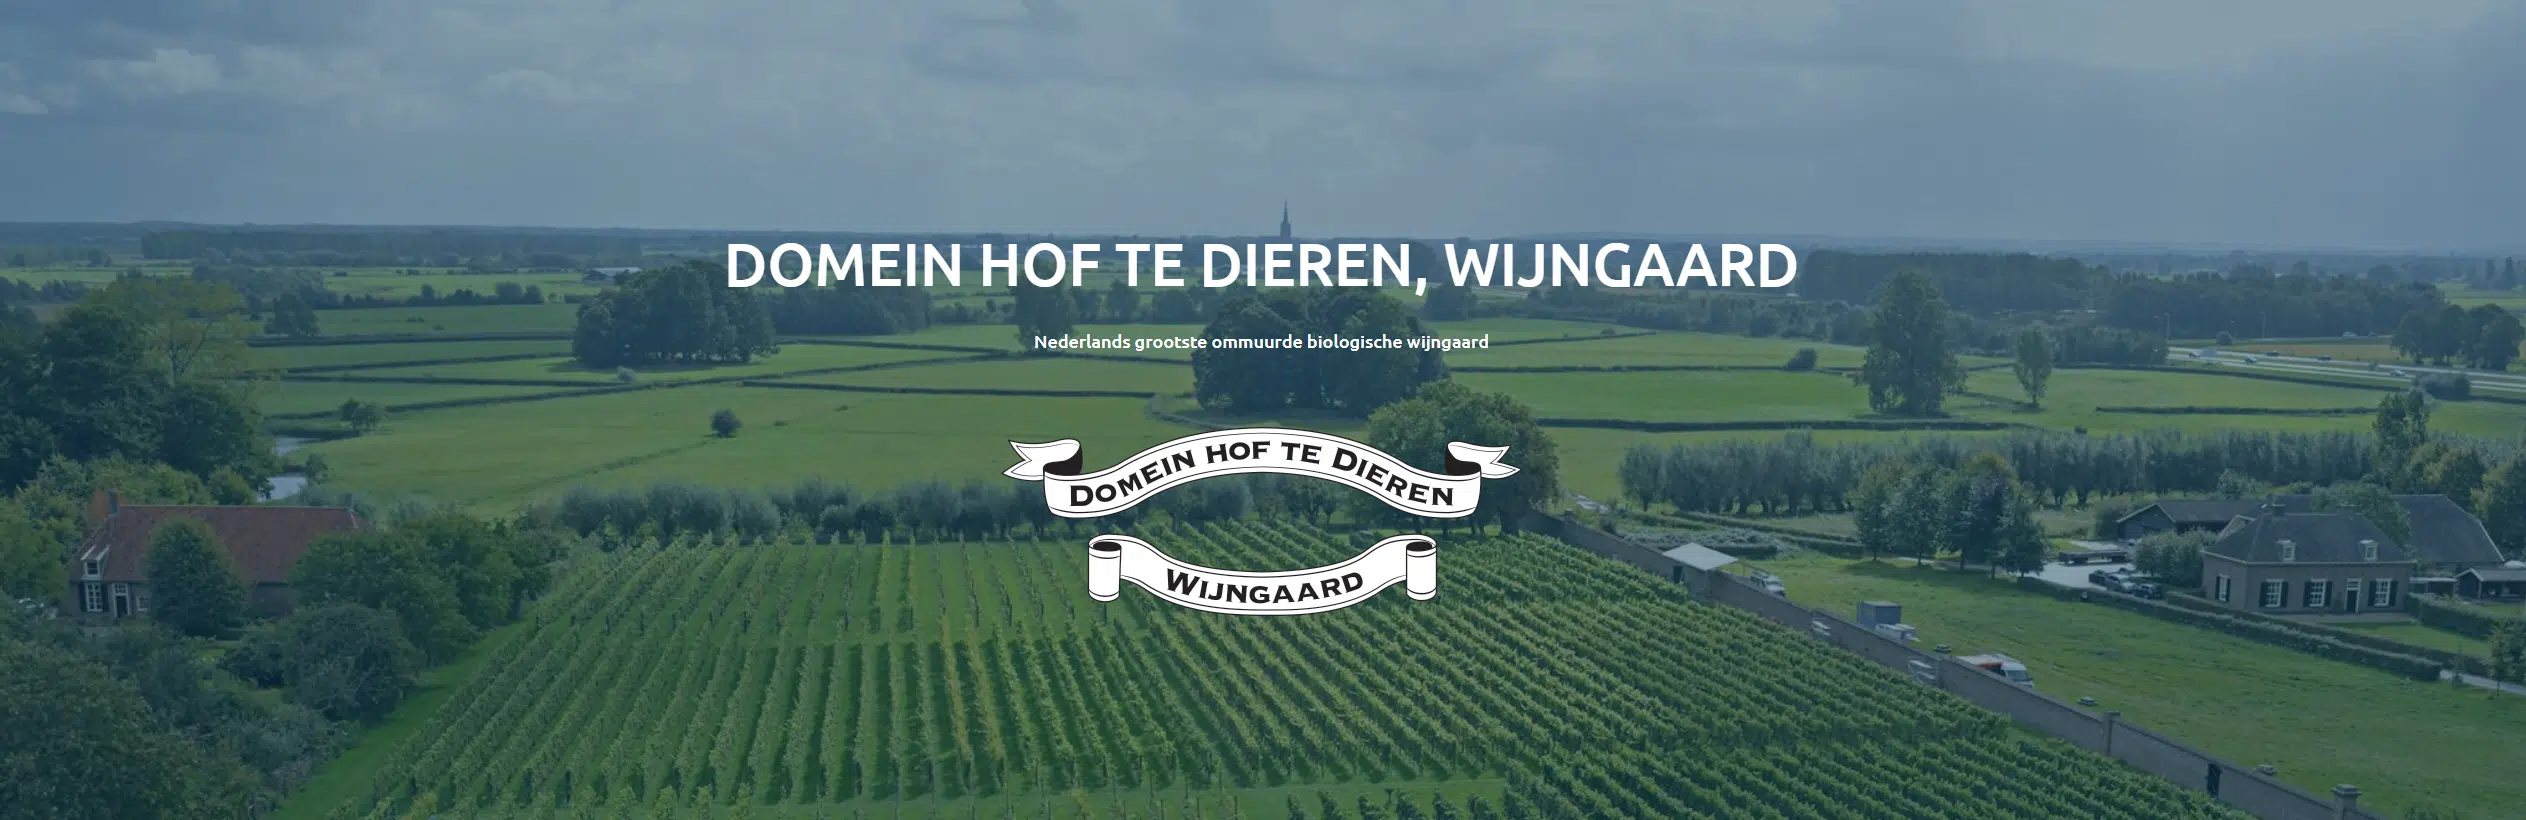 Domein Hof te Dieren, Nederlands grootste ommuurde biologische wijngaard